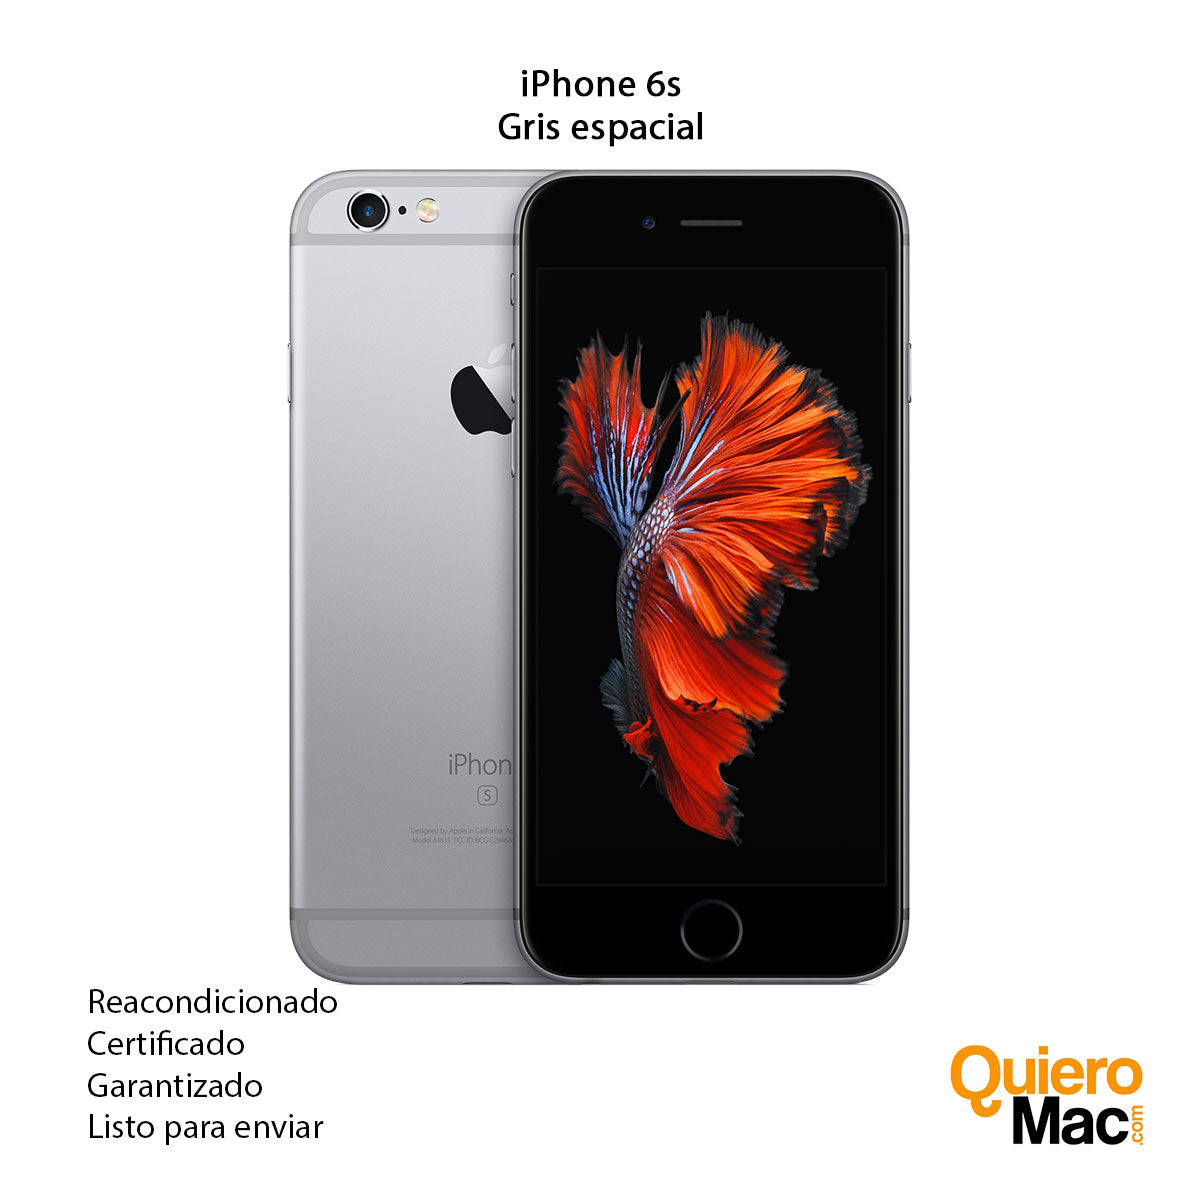 Celular iPhone 11 Reacondicionado 128gb color Rojo más Cargador Genérico